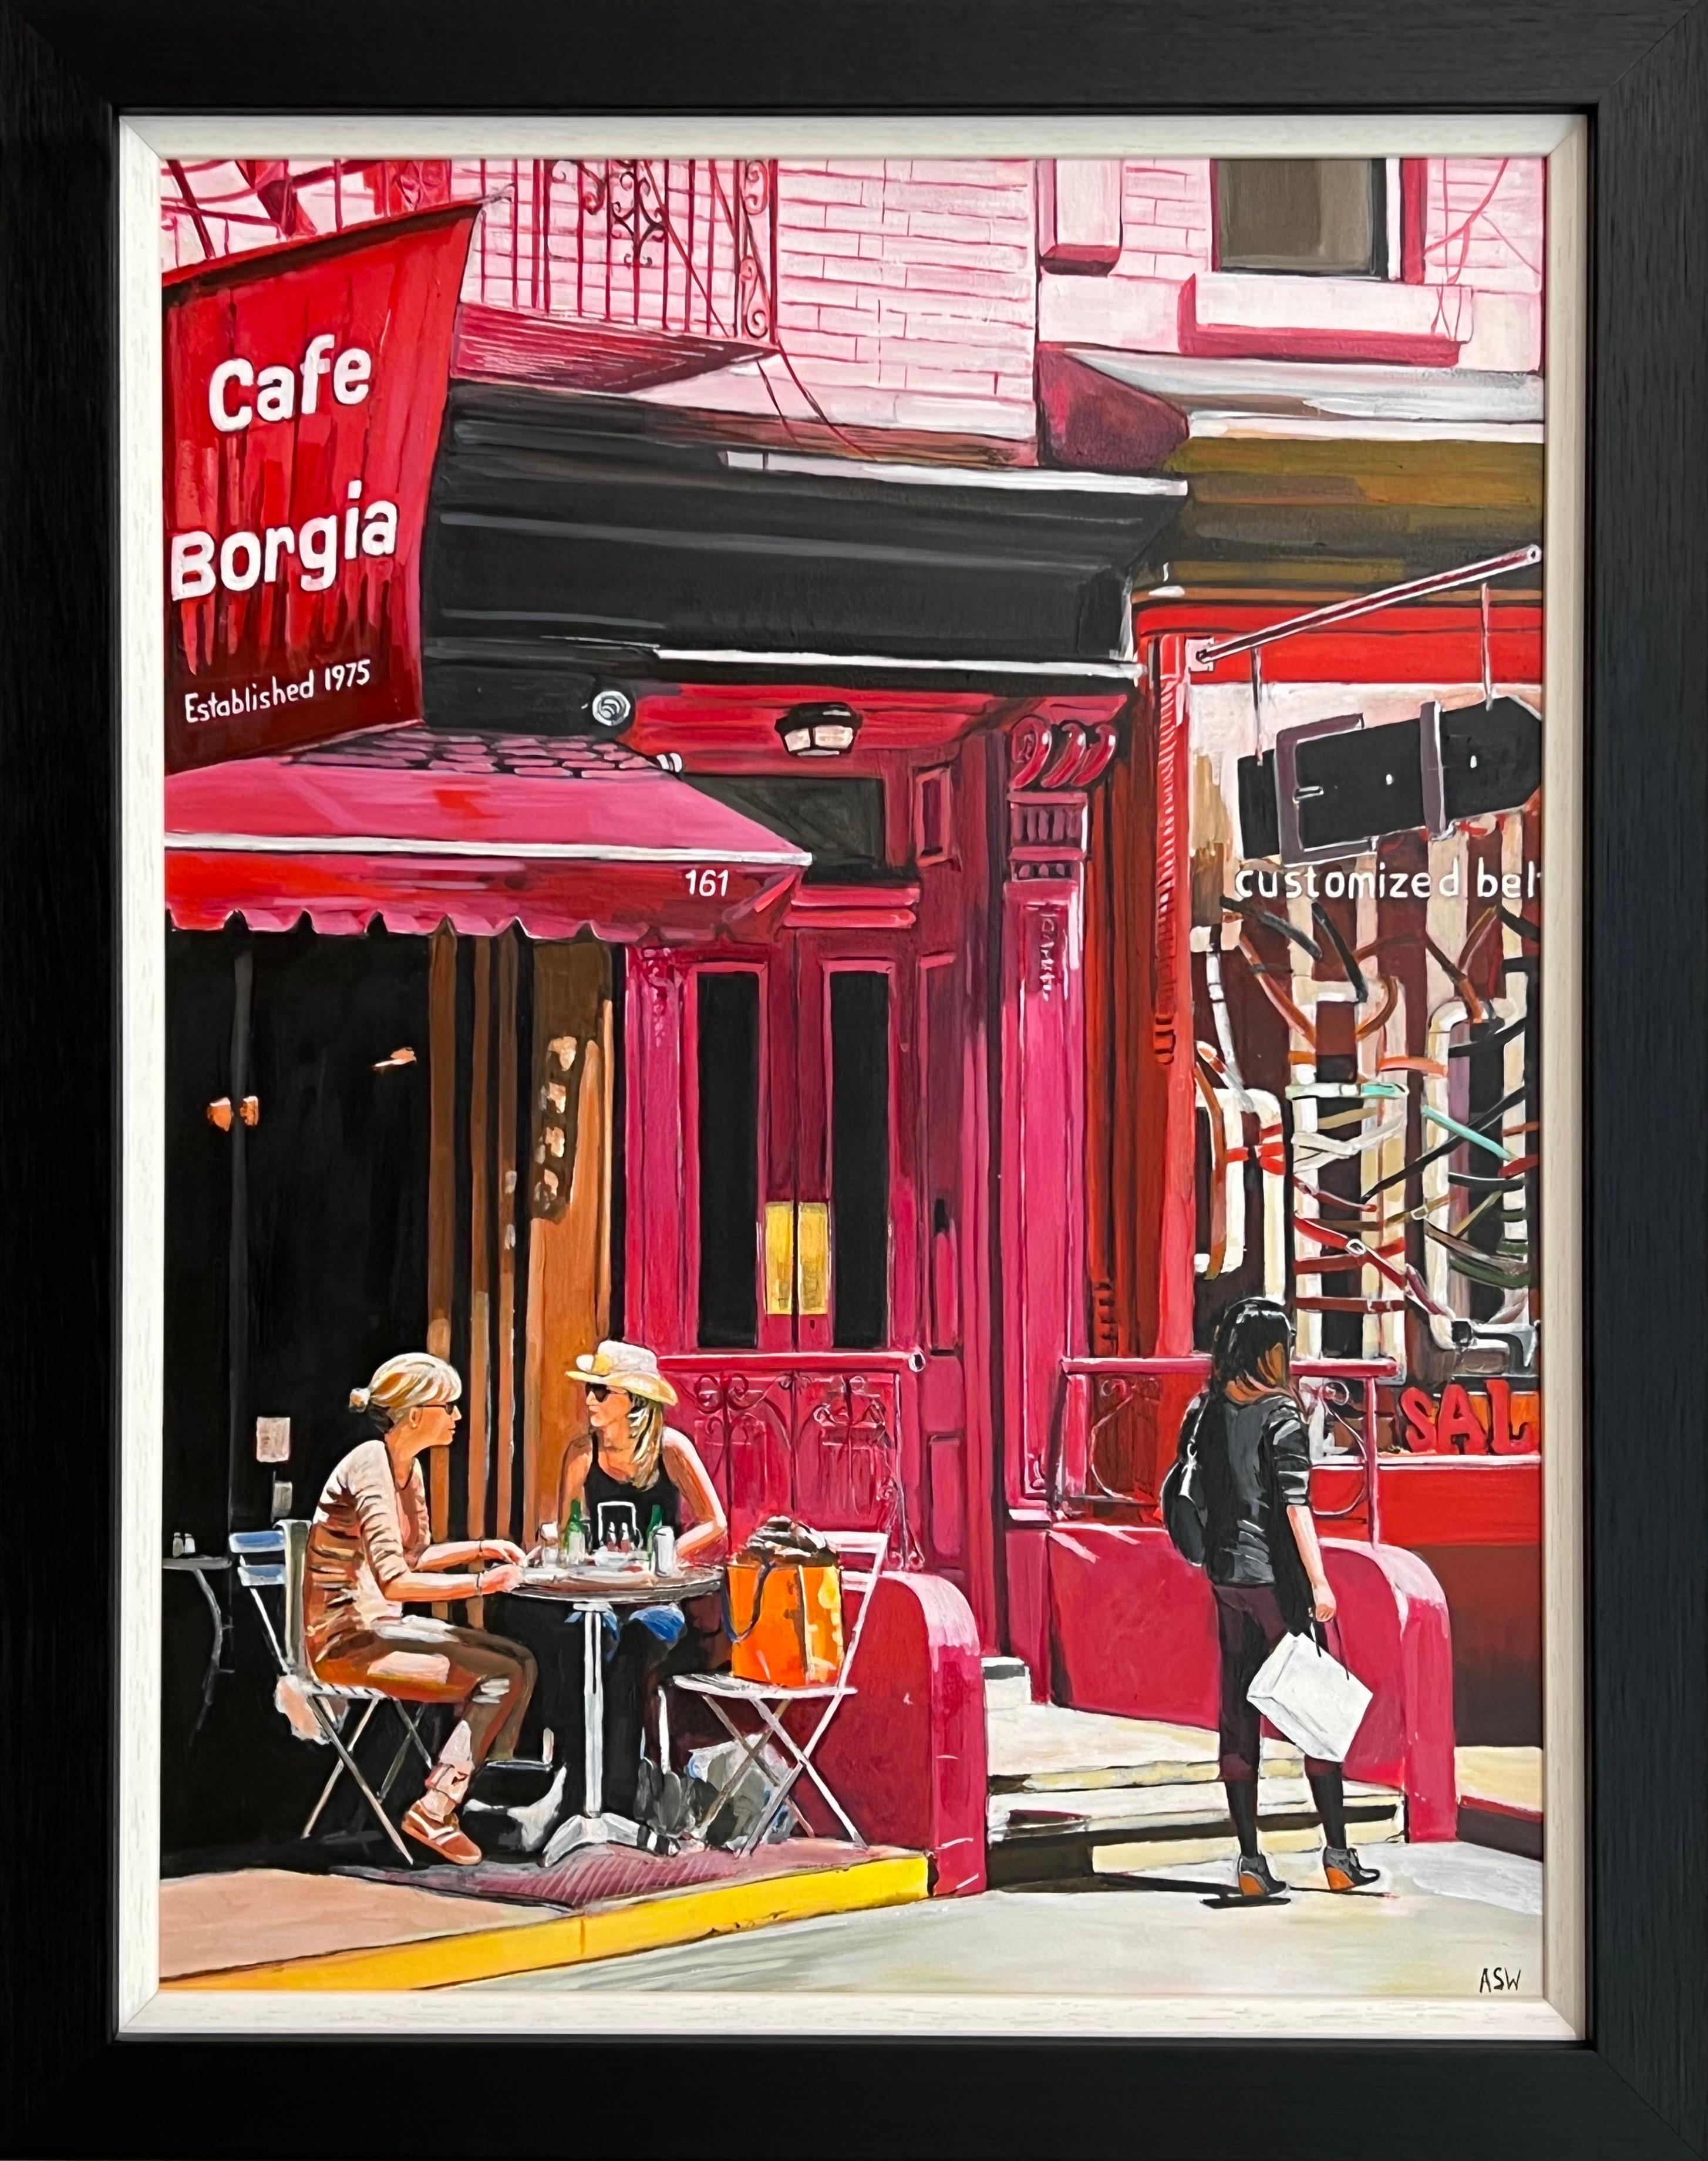 Cafe Borgia in New York City mit weiblichen Figuren der zeitgenössischen britischen Künstlerin